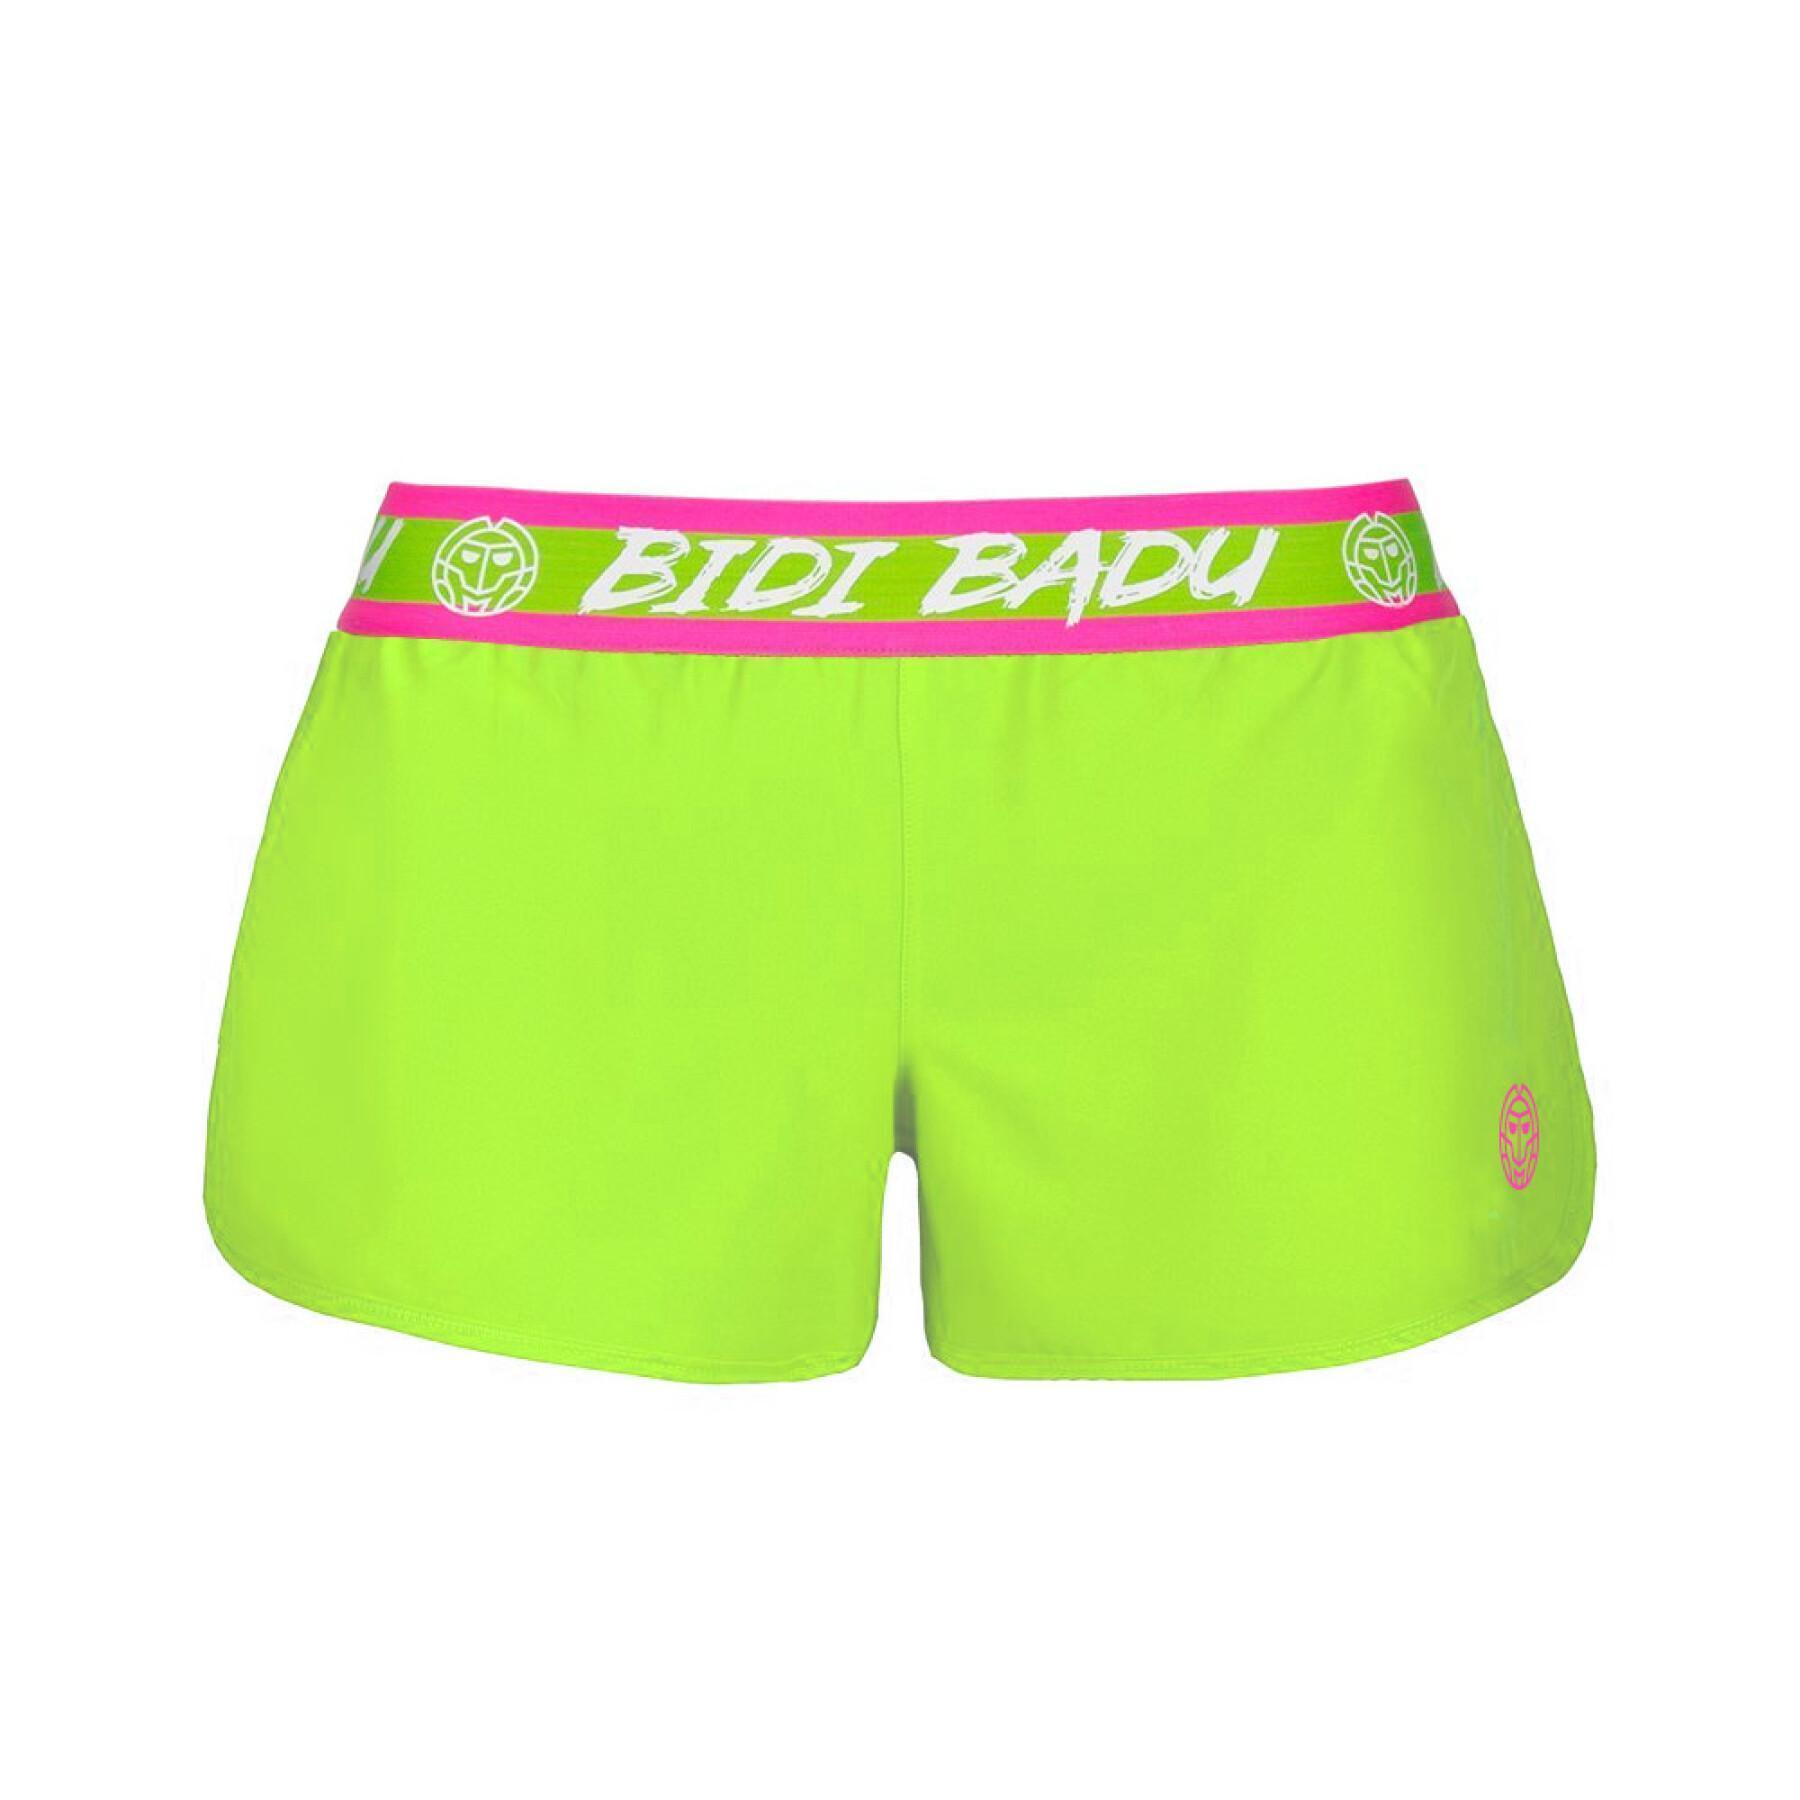 Women's 2-in-1 shorts Bidi Badu Tiida Tech